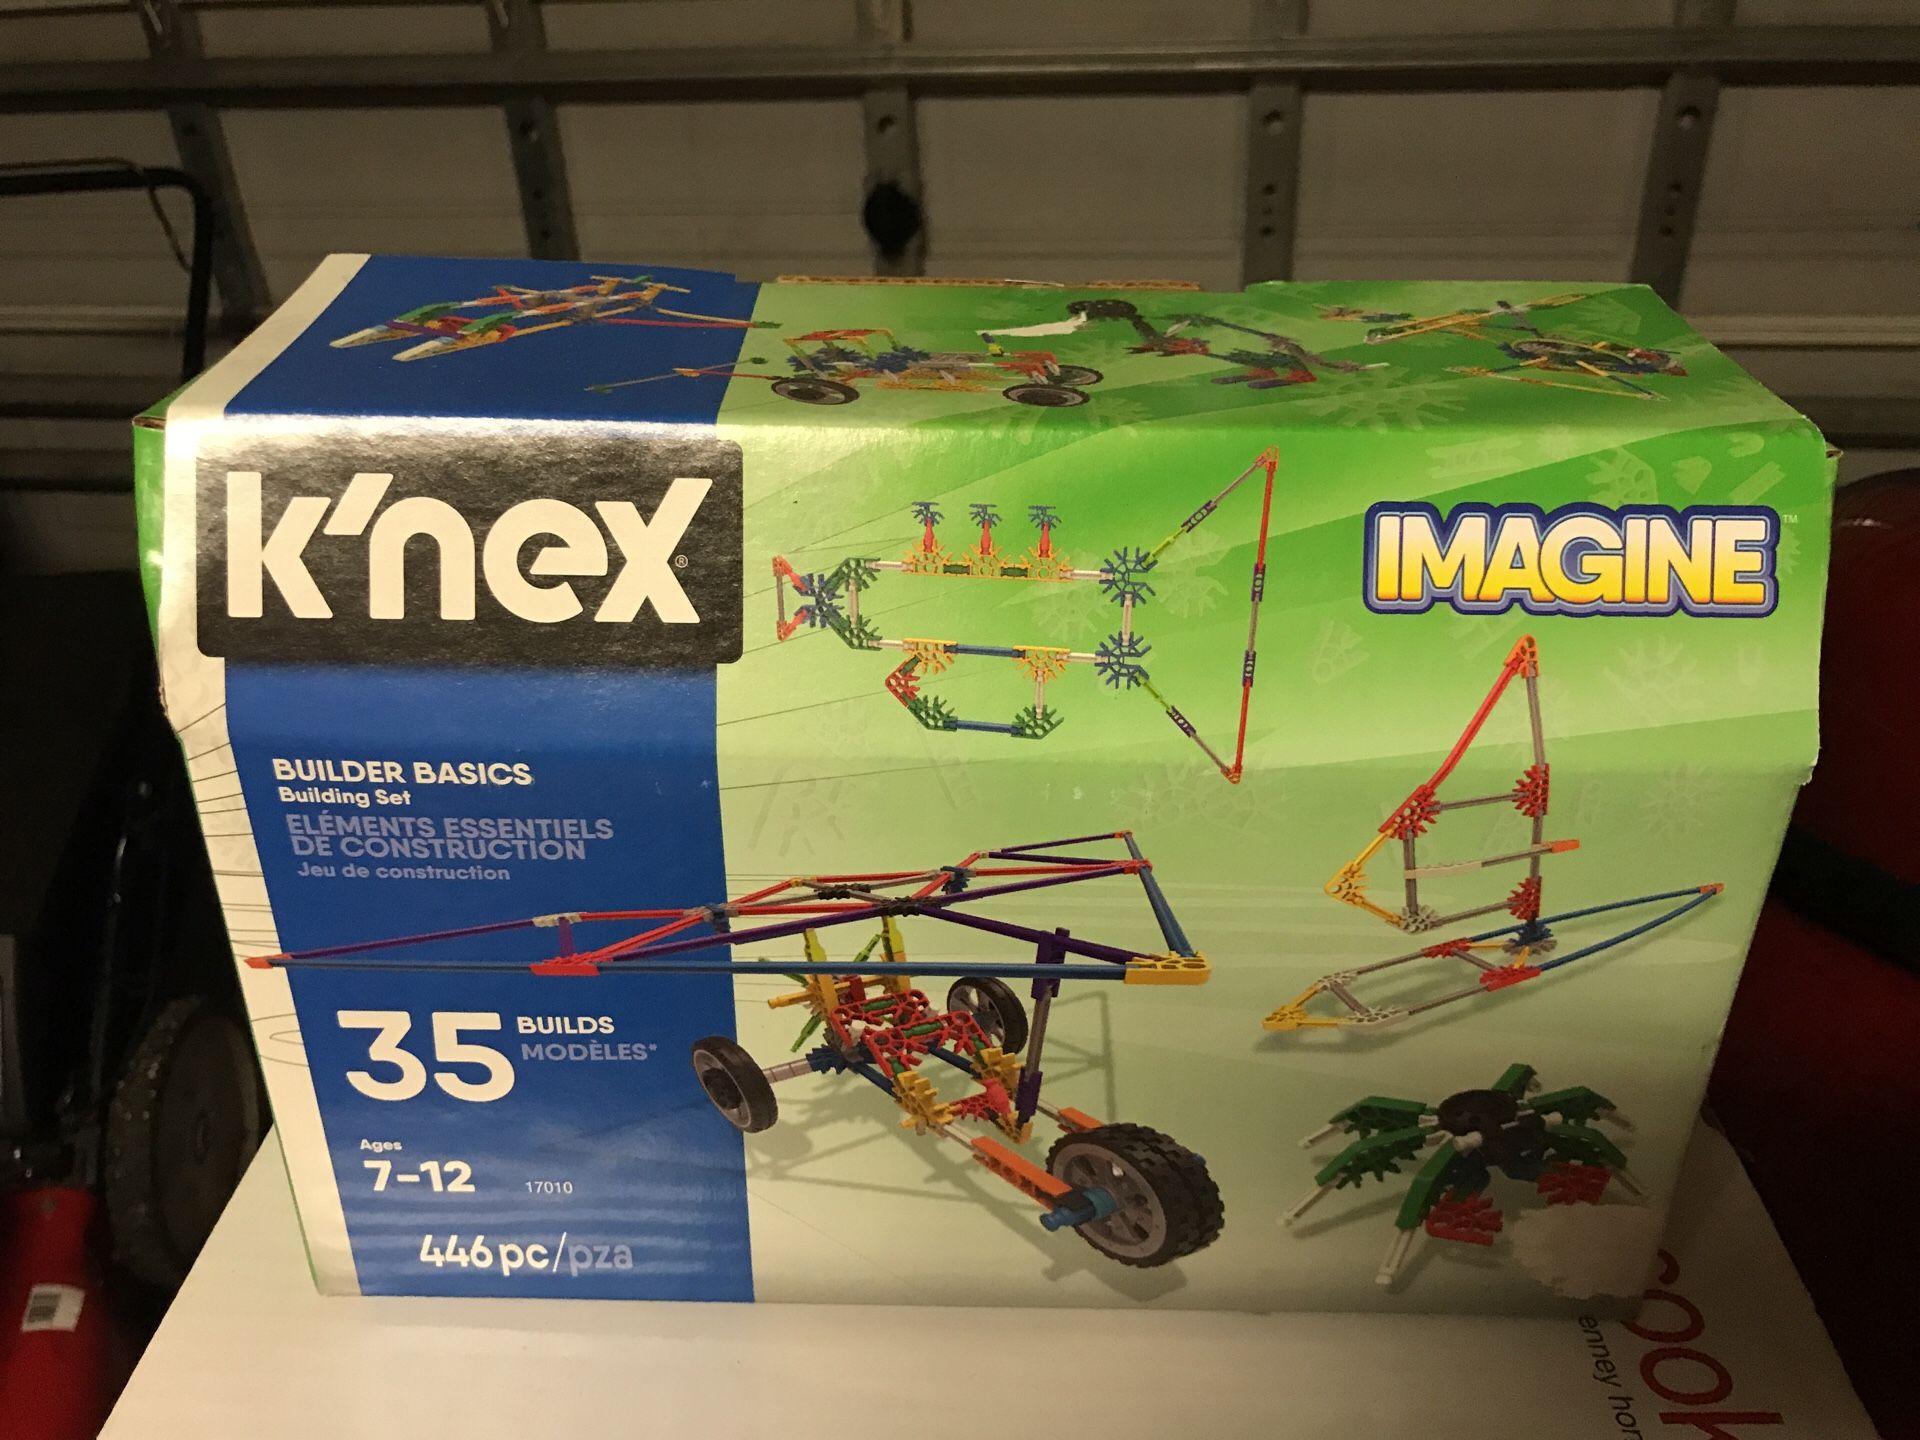 K’nex building set